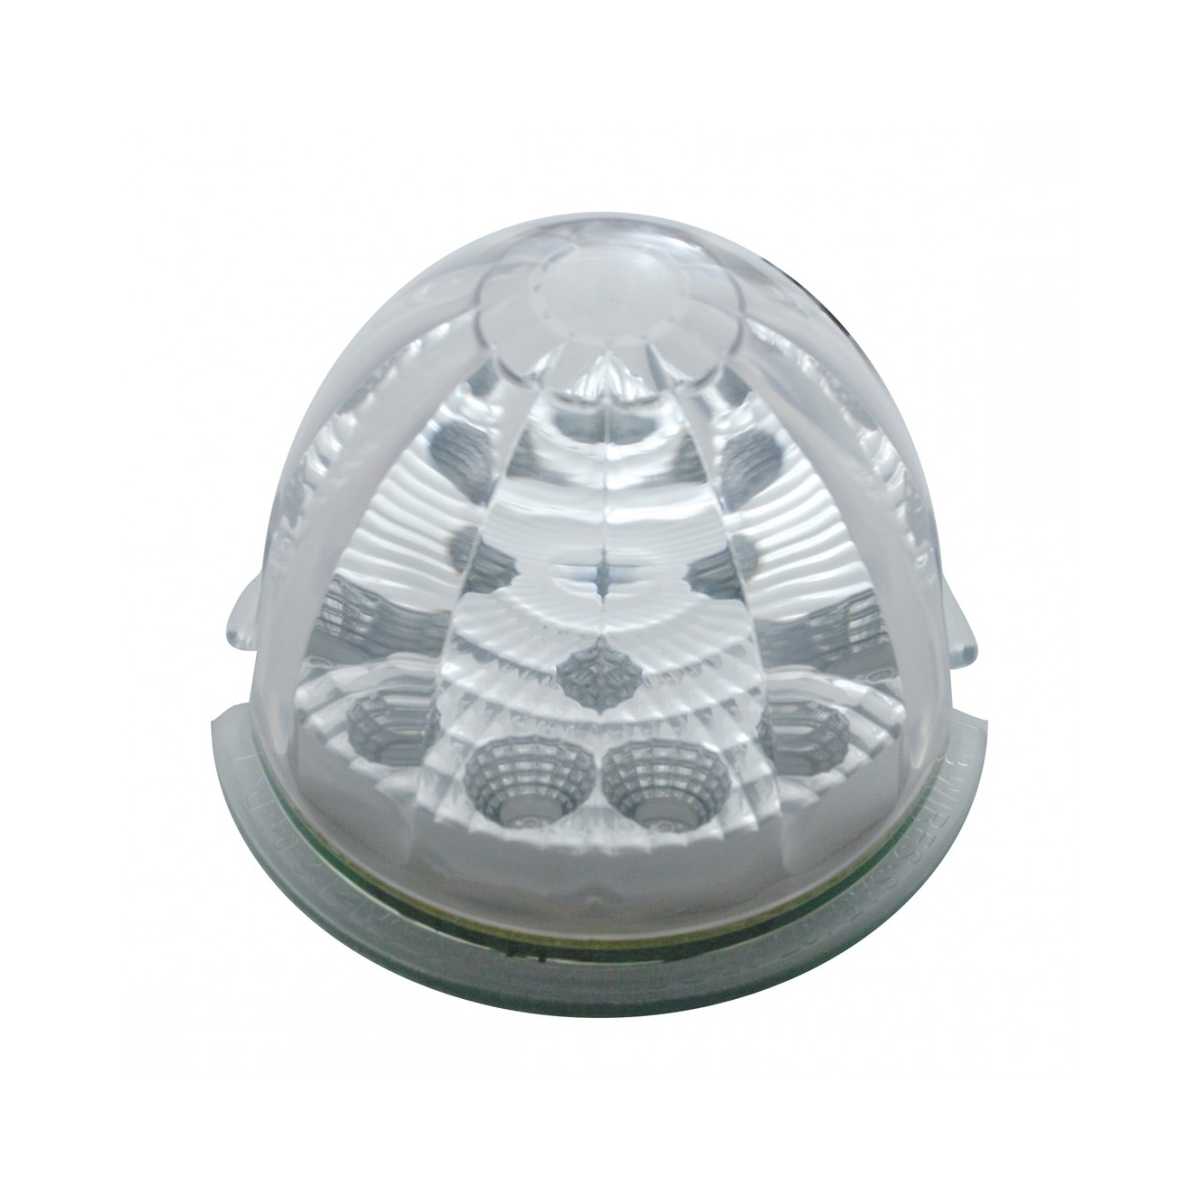 Peterbilt Air Cleaner Bracket w/ Eight 17 LED Lights & Visors - Clear Lens